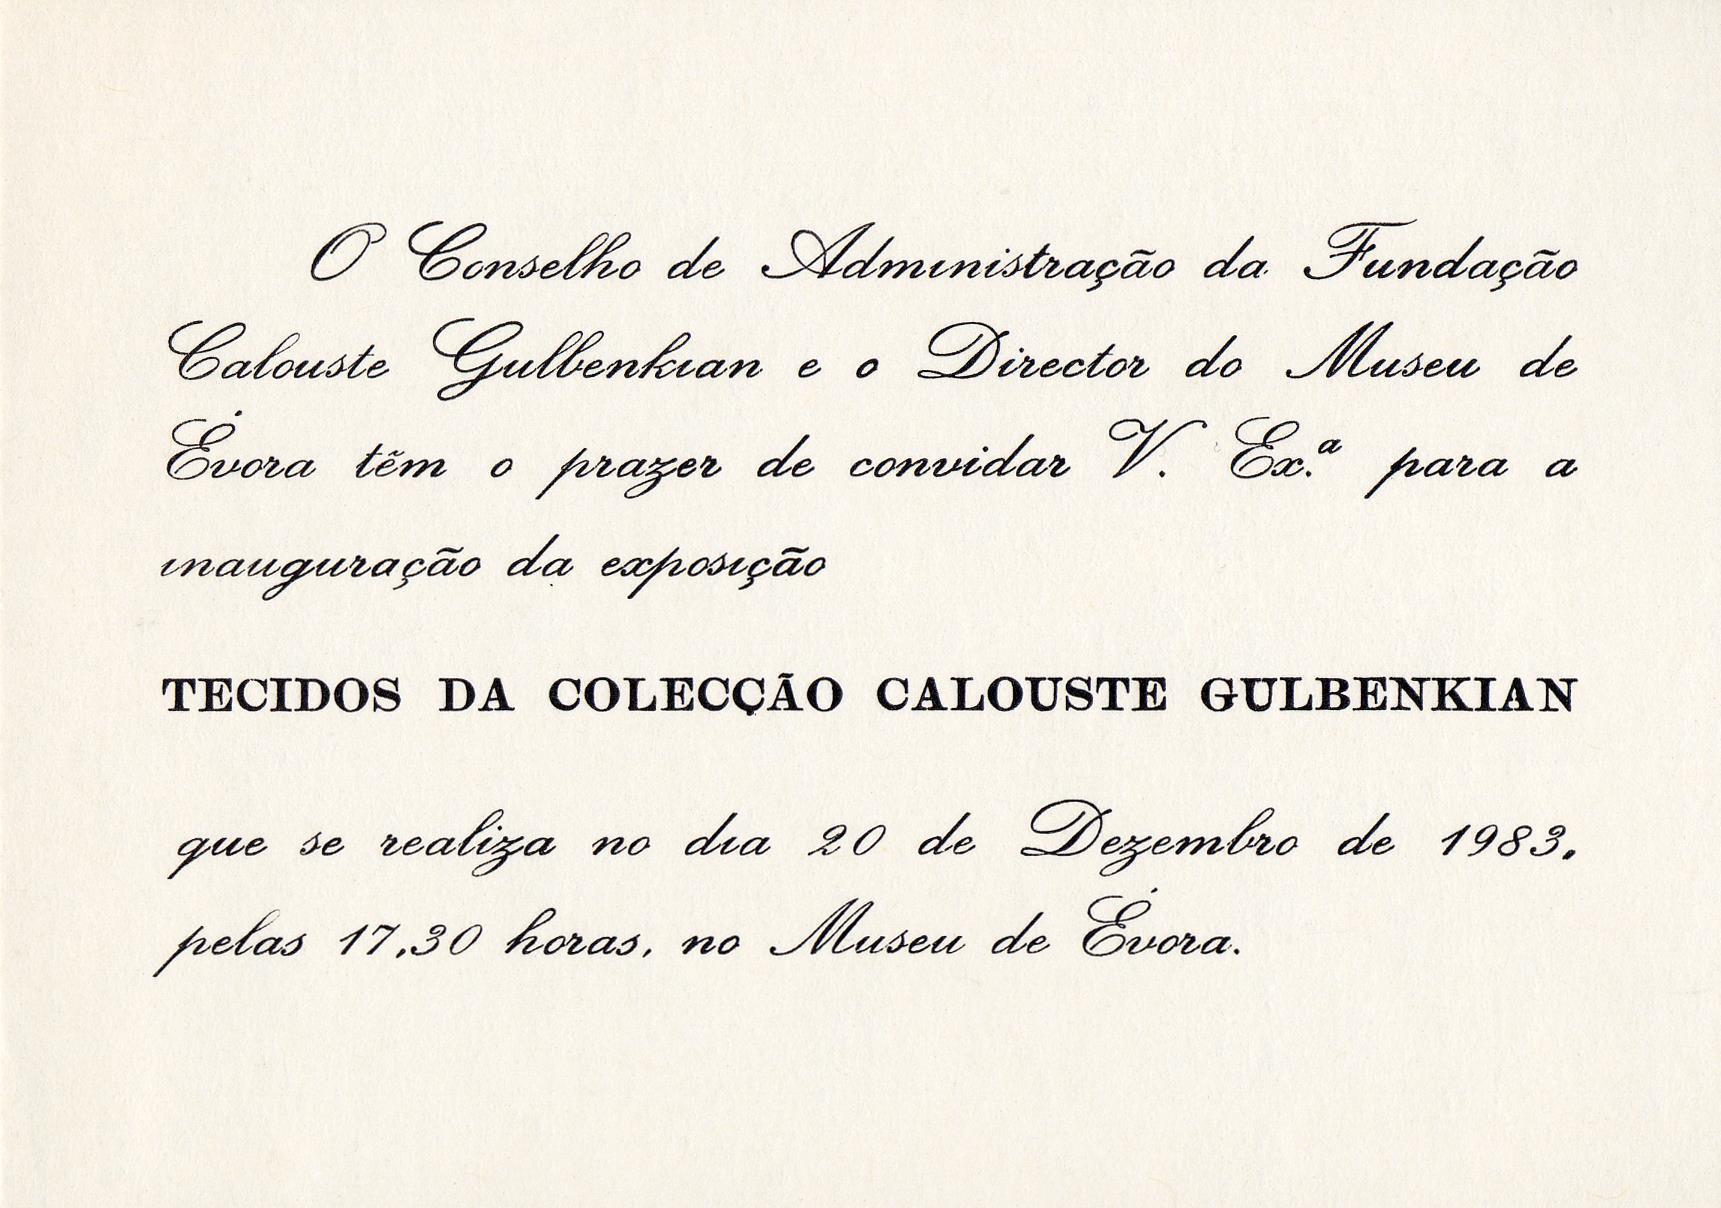 Tecidos e Rendas da Colecção Gulbenkian